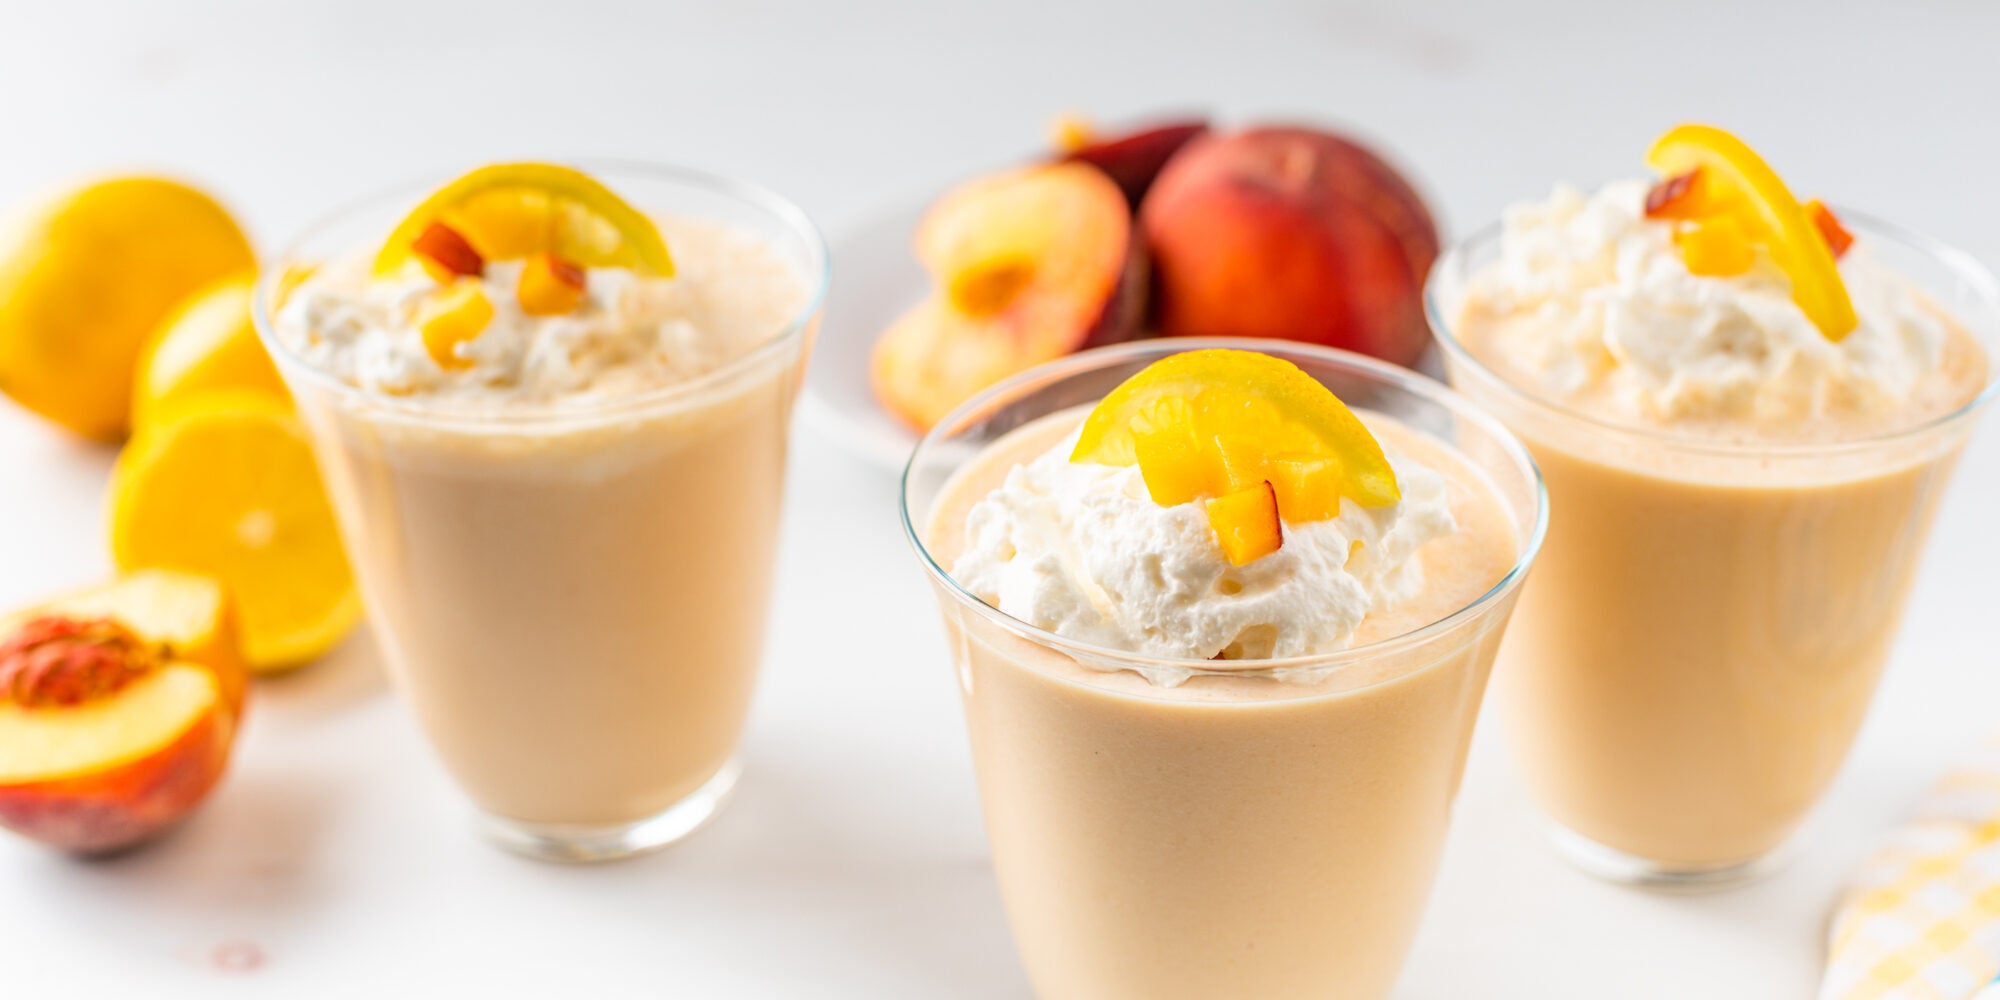 Peaches & Cream Smoothie